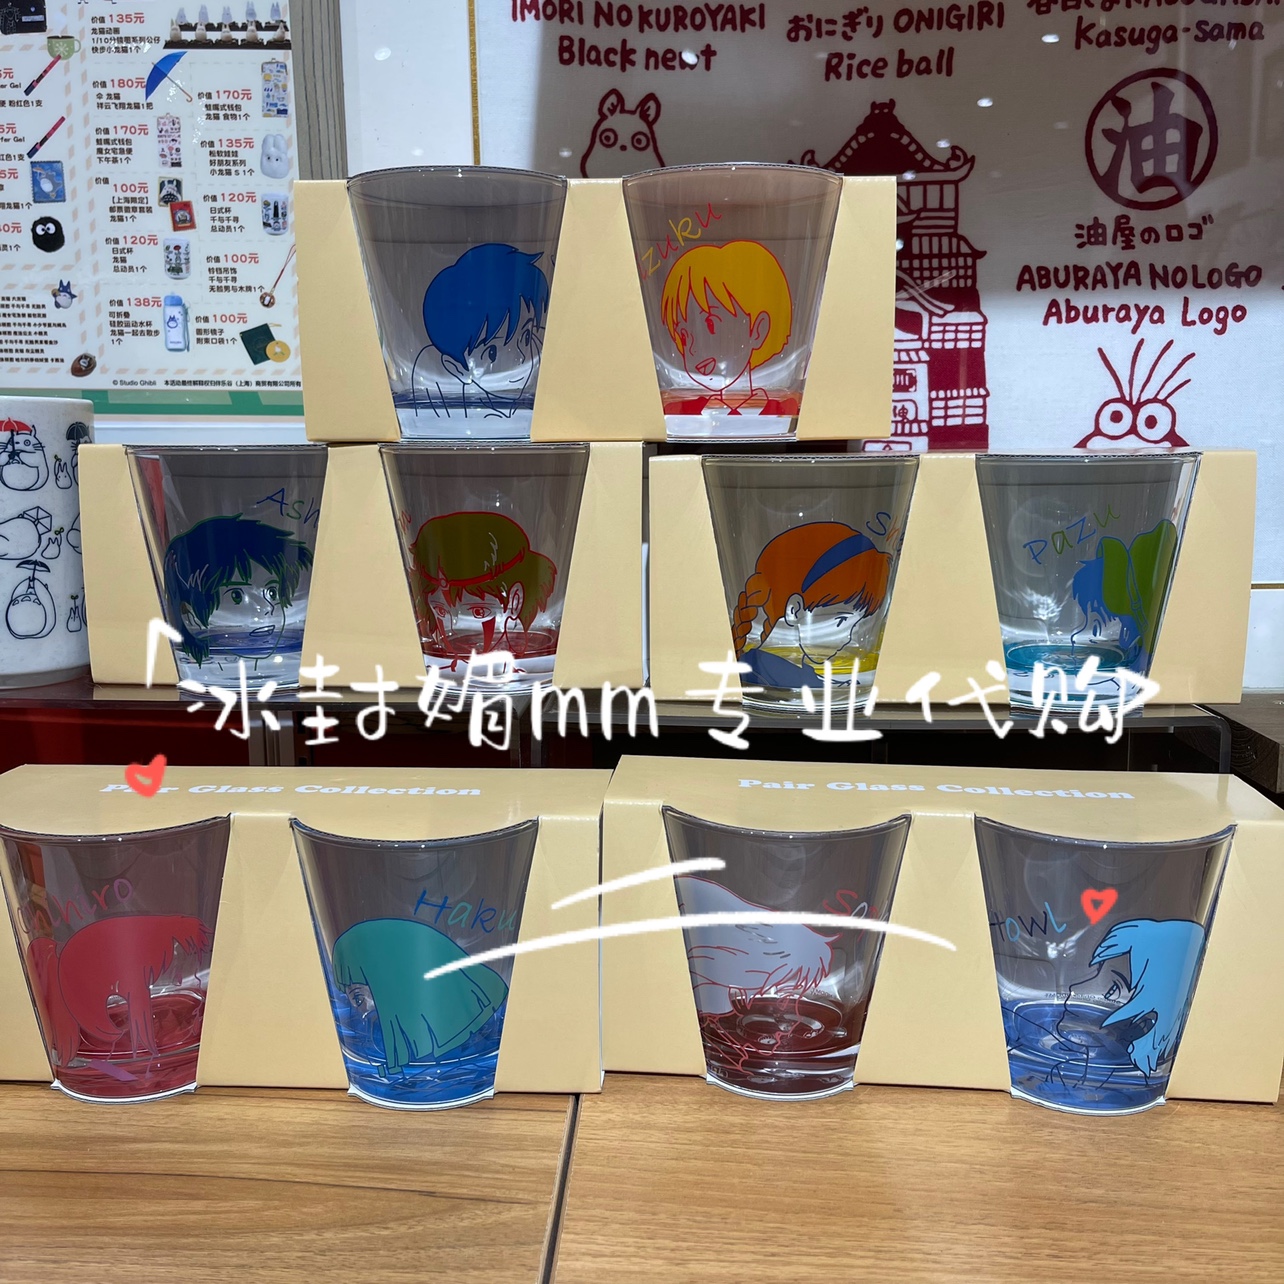 国内代购上海橡子共和国宫崎骏吉卜力玻璃对杯哈尔千与千寻心之谷-封面